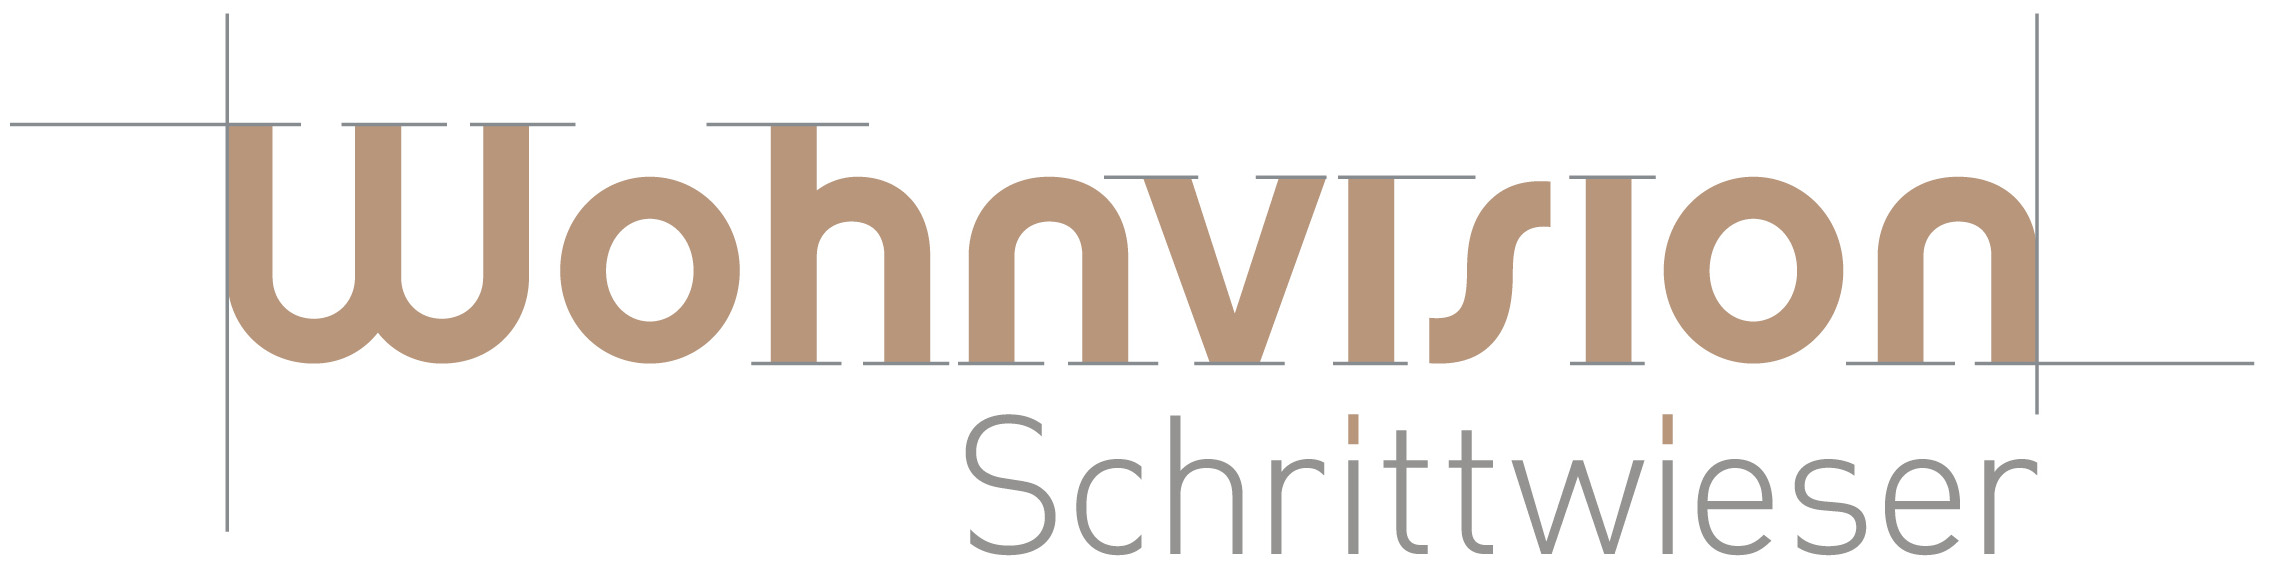 Innenarchitektin_Judith Schrittwieser_Logo